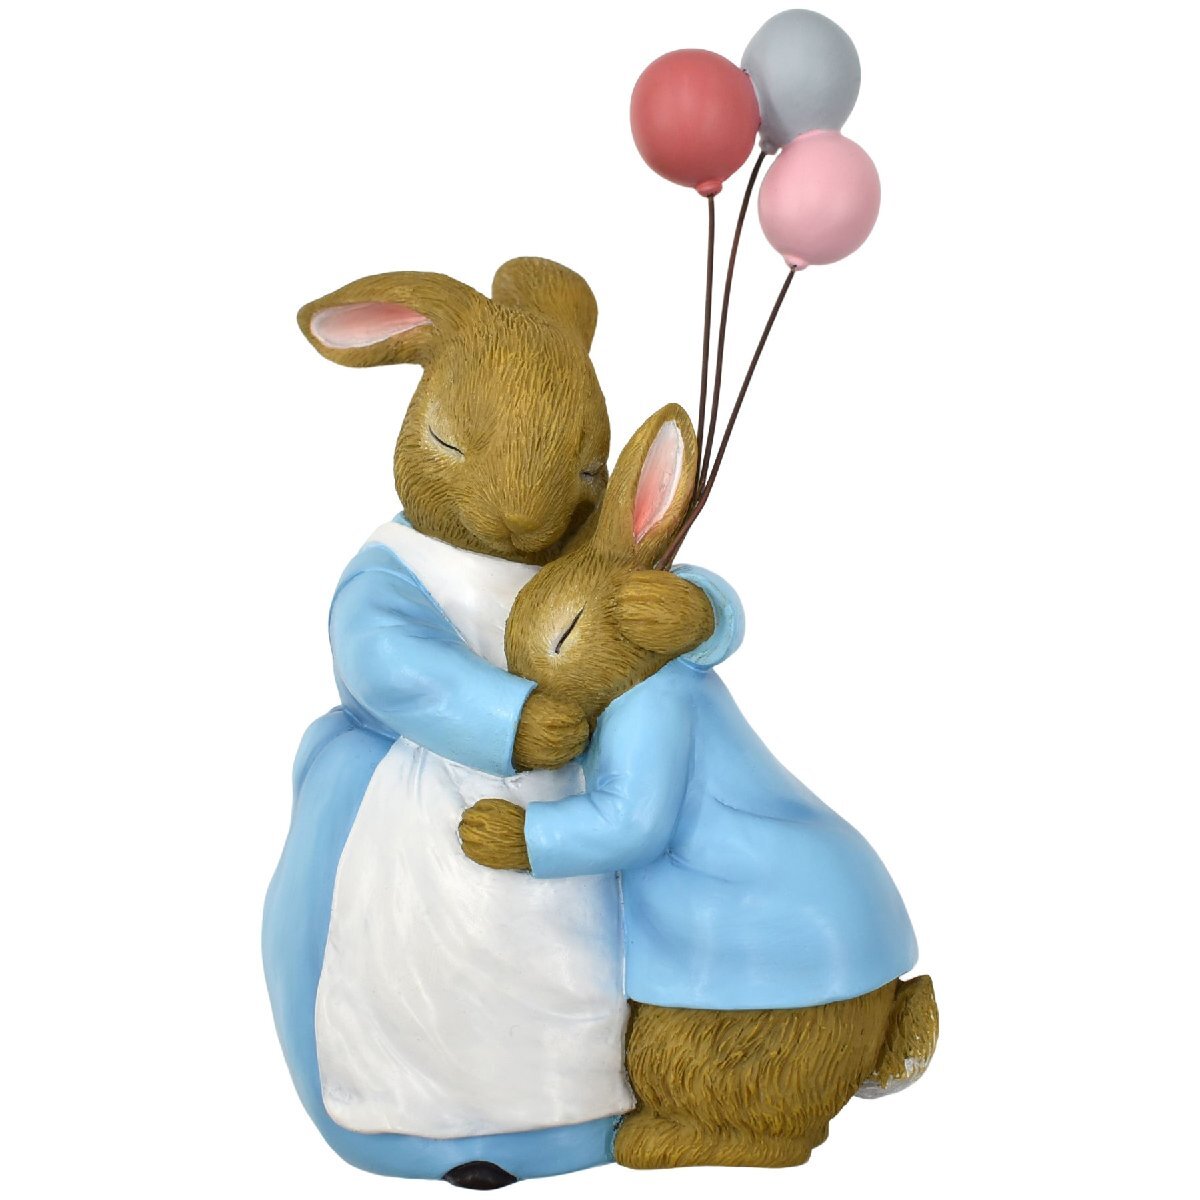 Amado durante mucho tiempo en todo el mundo., Peter Rabbit - Madre abrazándolo - Adorno de pared, 13x6x22cm, Reproducido fielmente como en el libro de imágenes., Artículos hechos a mano, interior, bienes varios, ornamento, objeto